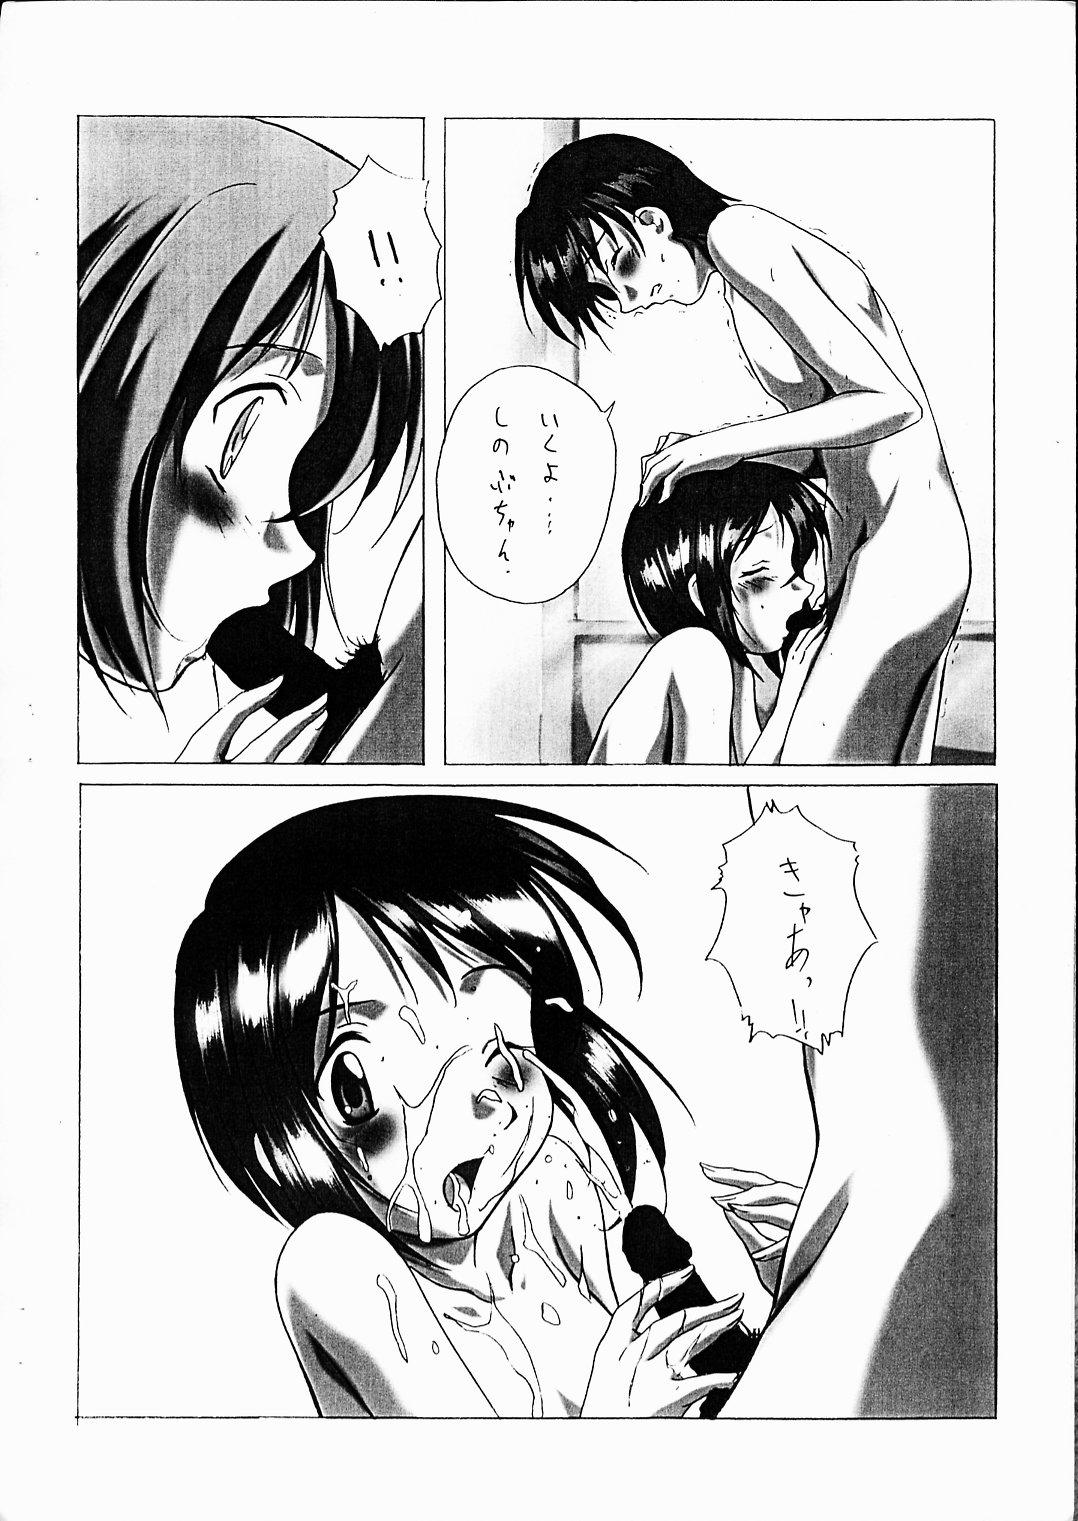 Best Blowjobs Ever Astral Bout! Yokoku-gou - Cardcaptor sakura Love hina Pussysex - Page 8